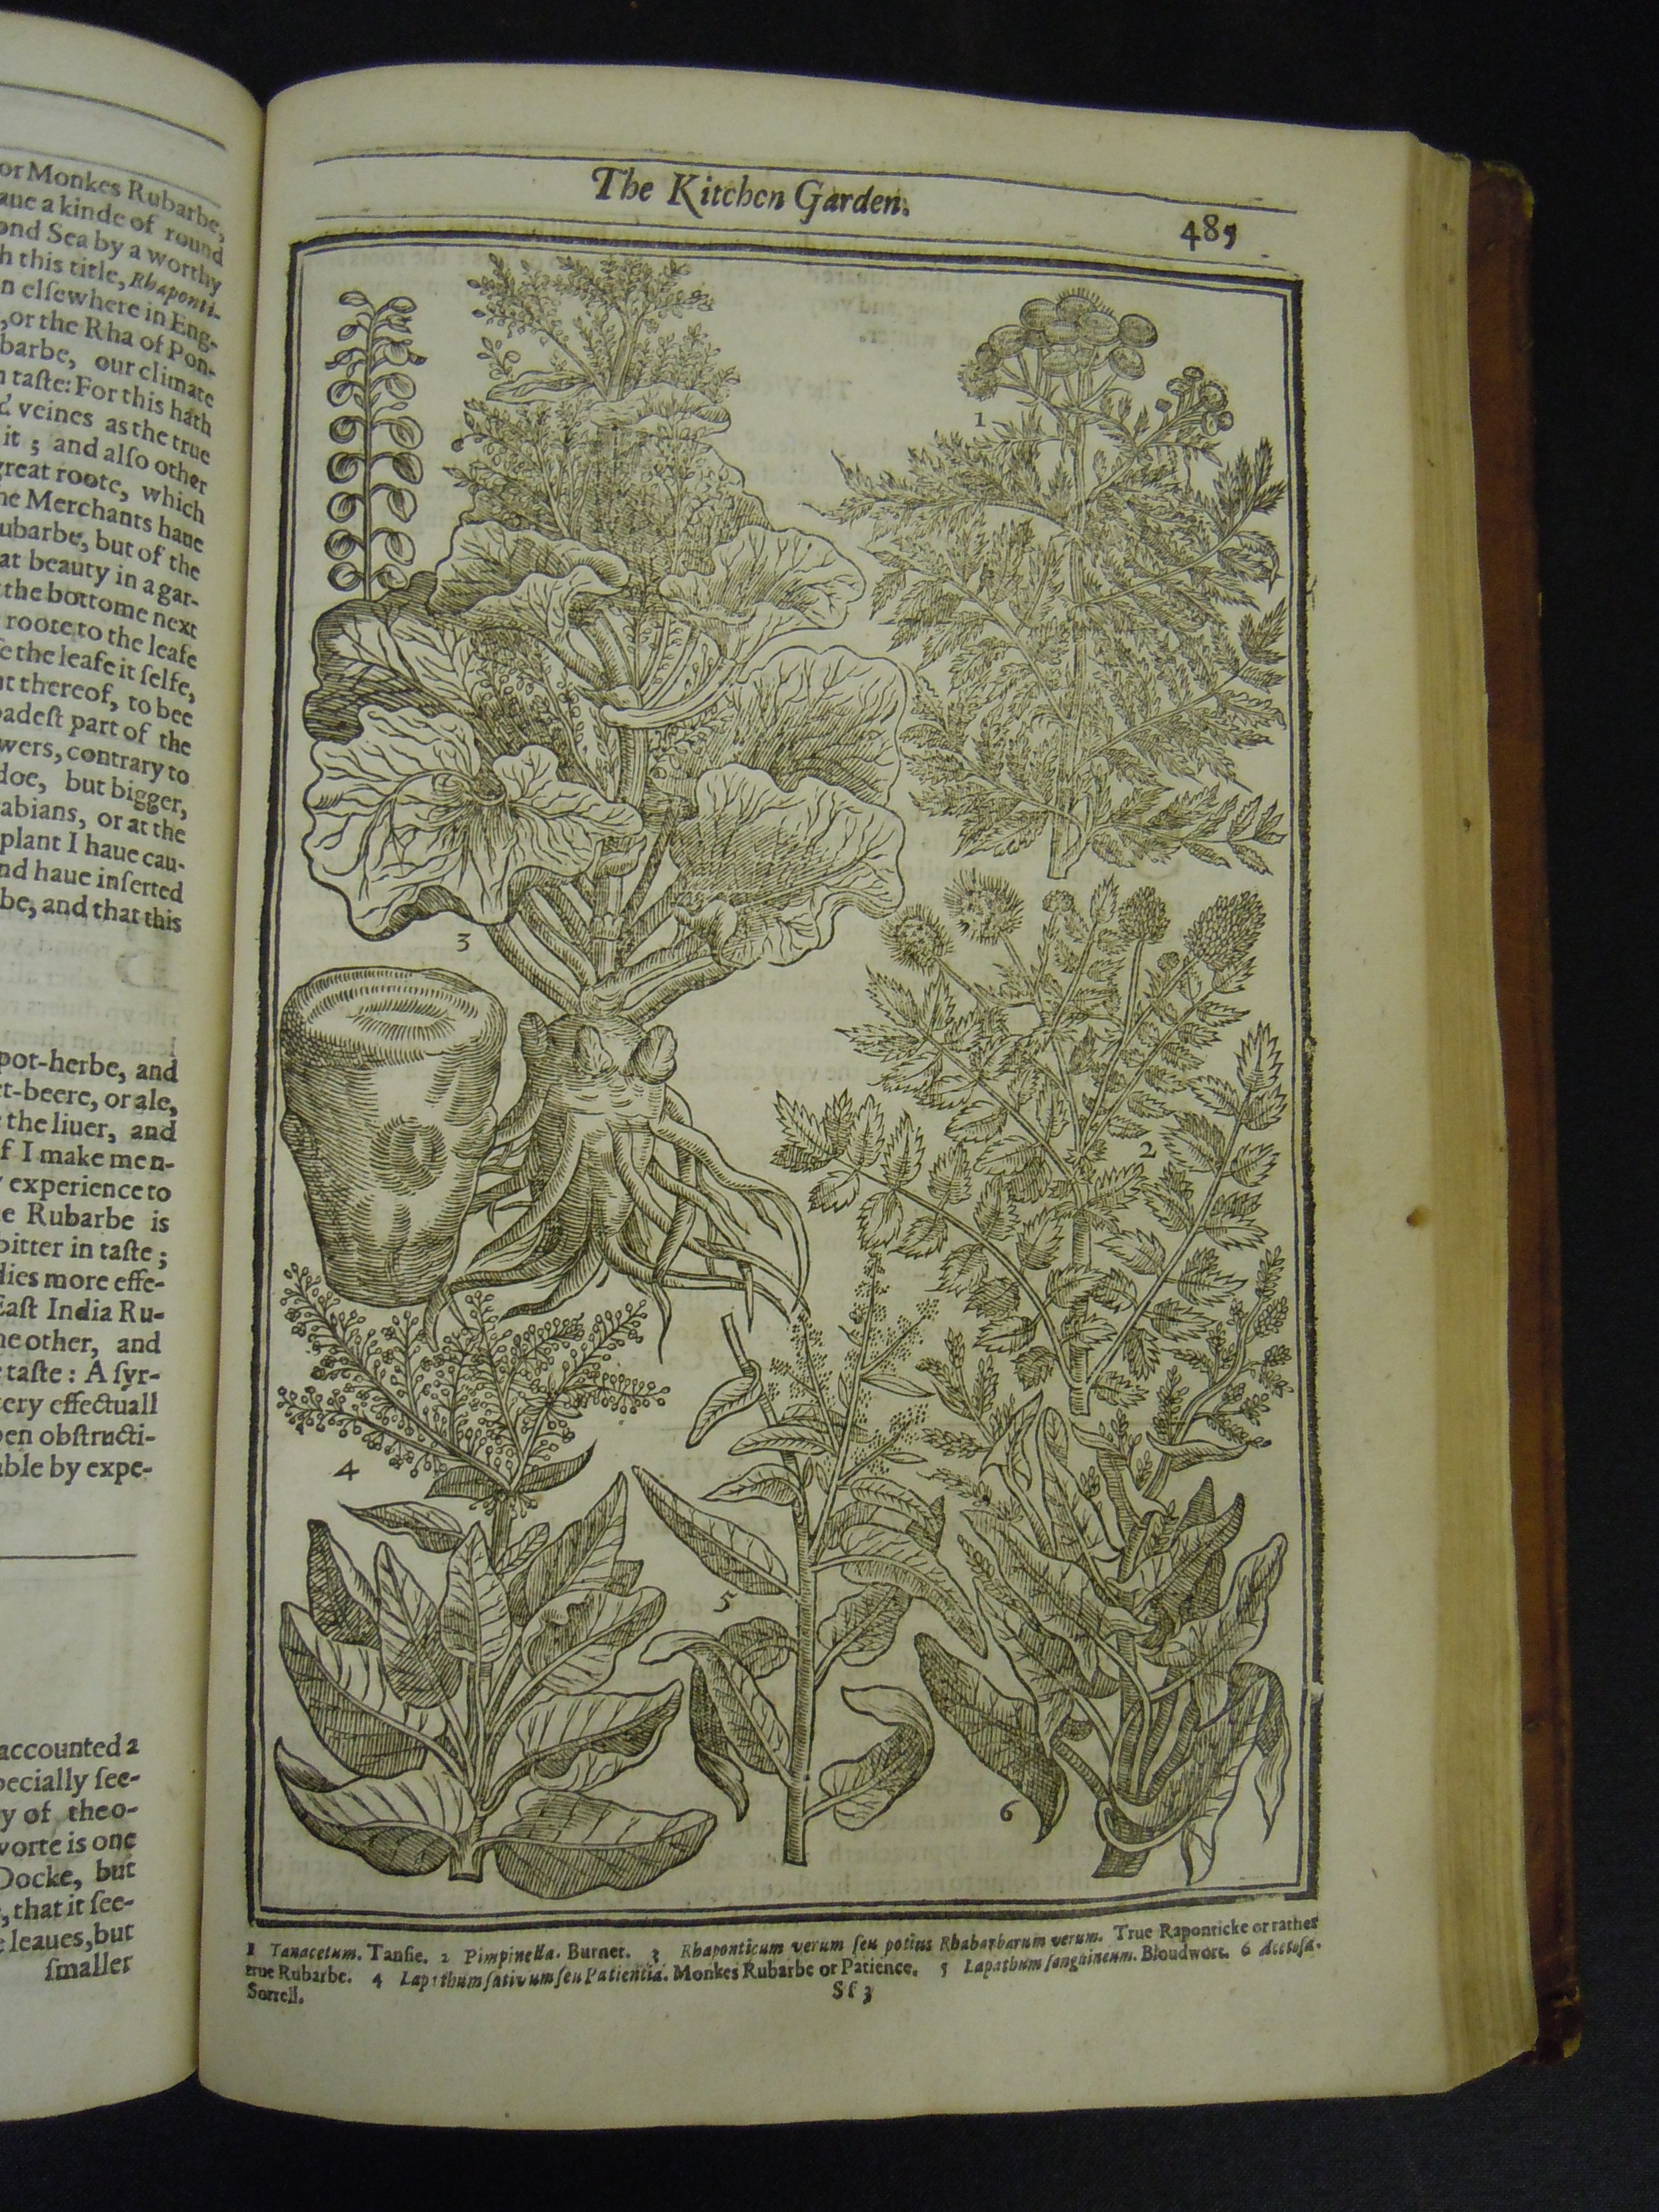 BT1.31.13, p.485, John Parkinson’s Paradisi in sole paradisus terrestris (1629)